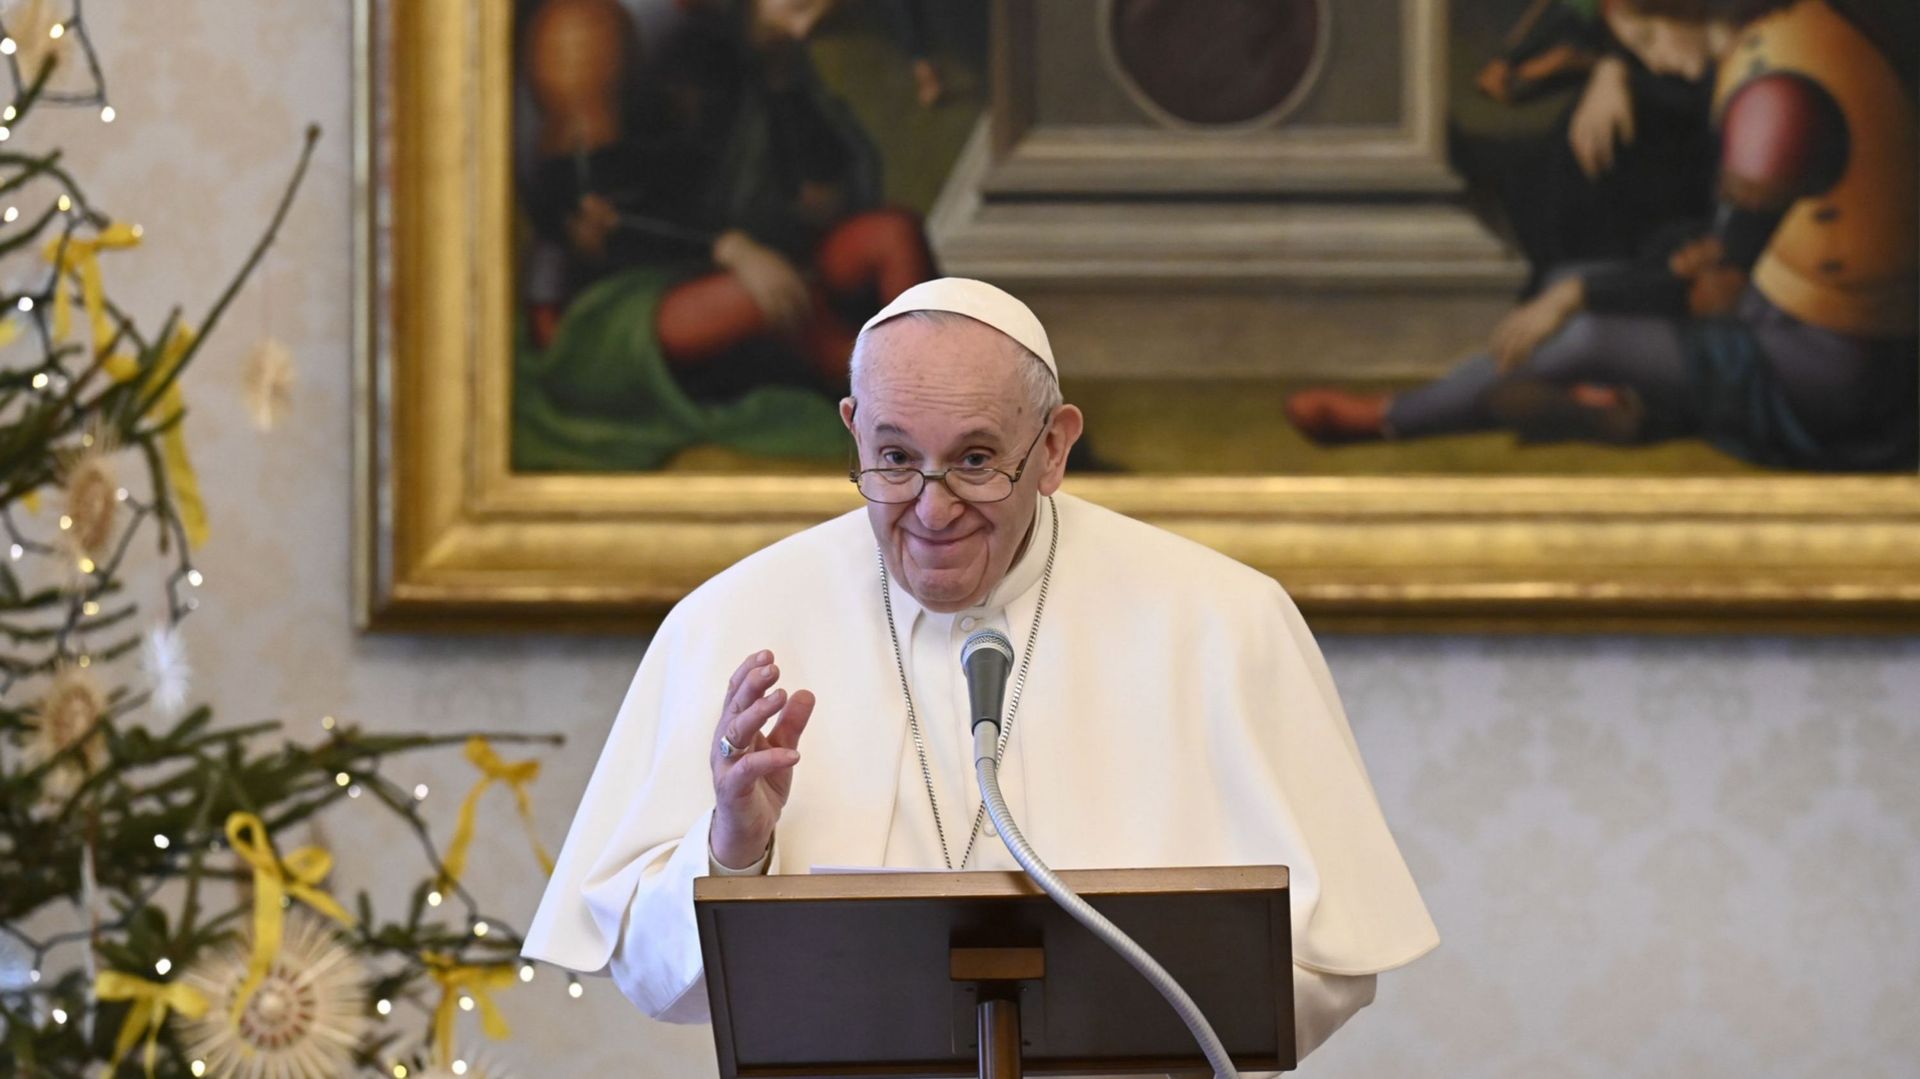 Centrafrique: le pape demande à tous "d'éviter la violence"